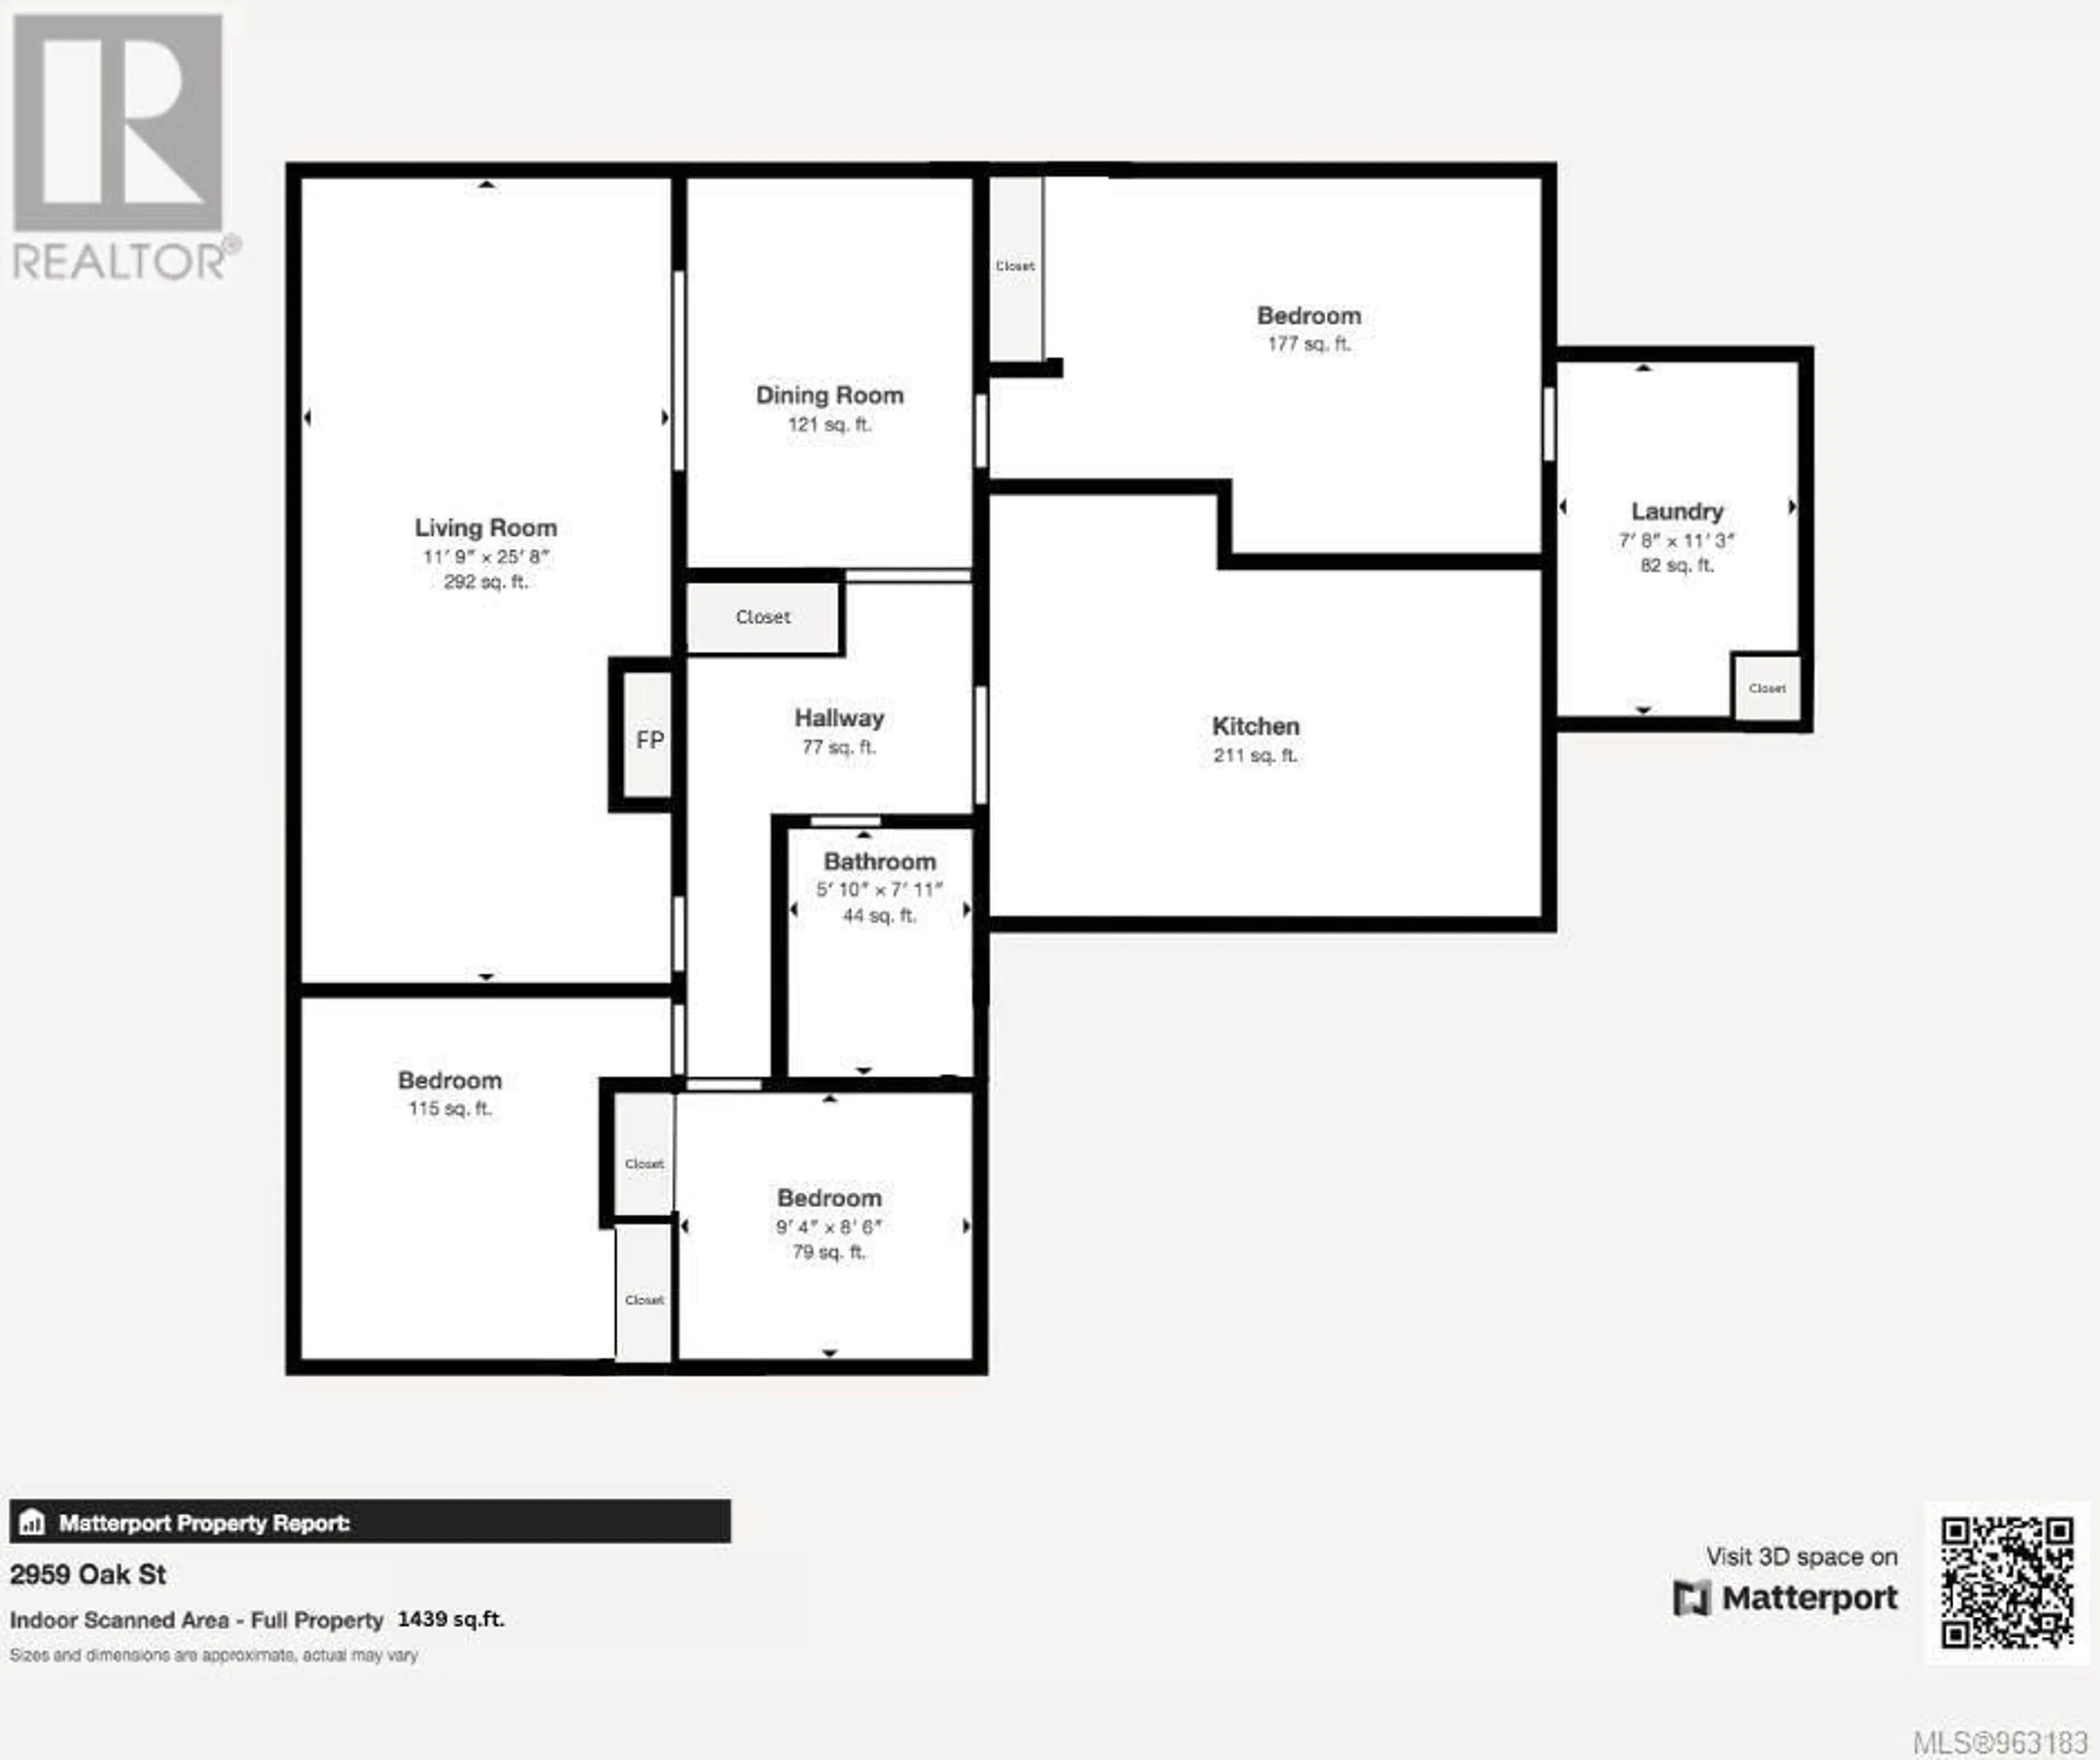 Floor plan for 2959 Oak St, Chemainus British Columbia V0R1K1